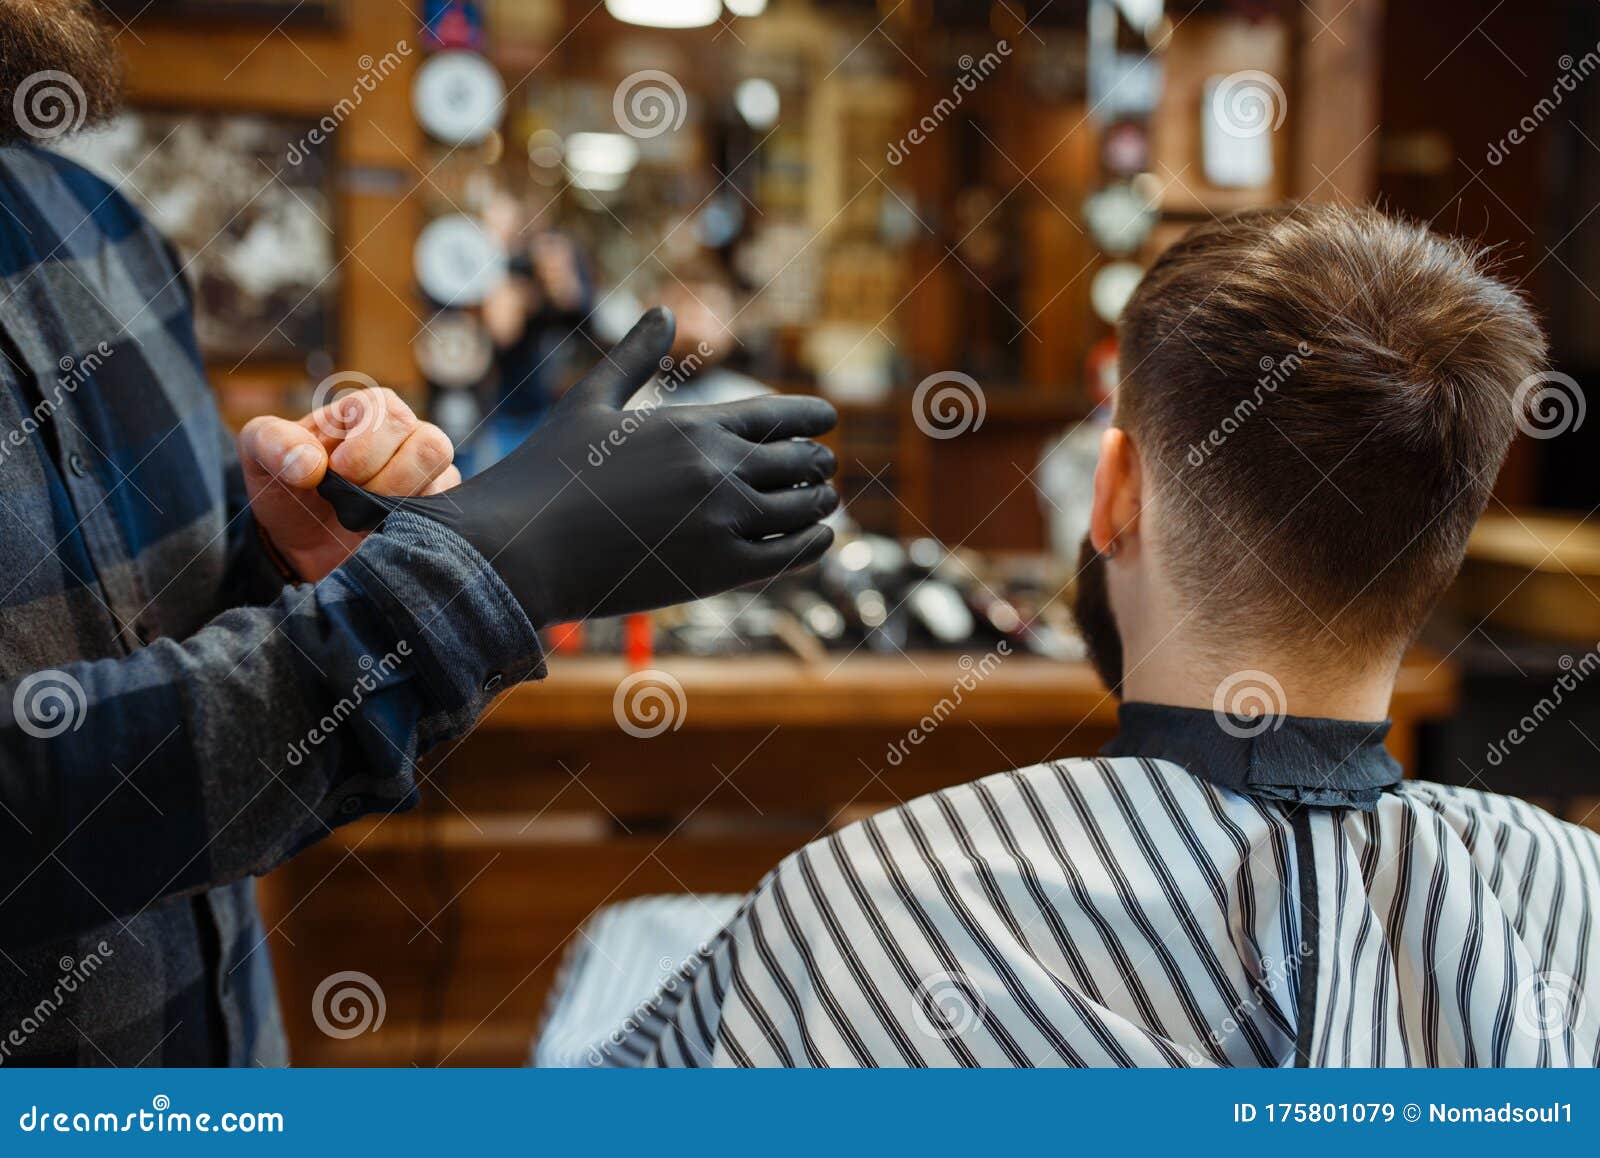 Coiffeur Dans Le Tablier Avec Le Salon De Coiffure D'outils De Coupe Image  stock - Image du coiffeur, homme: 178103687